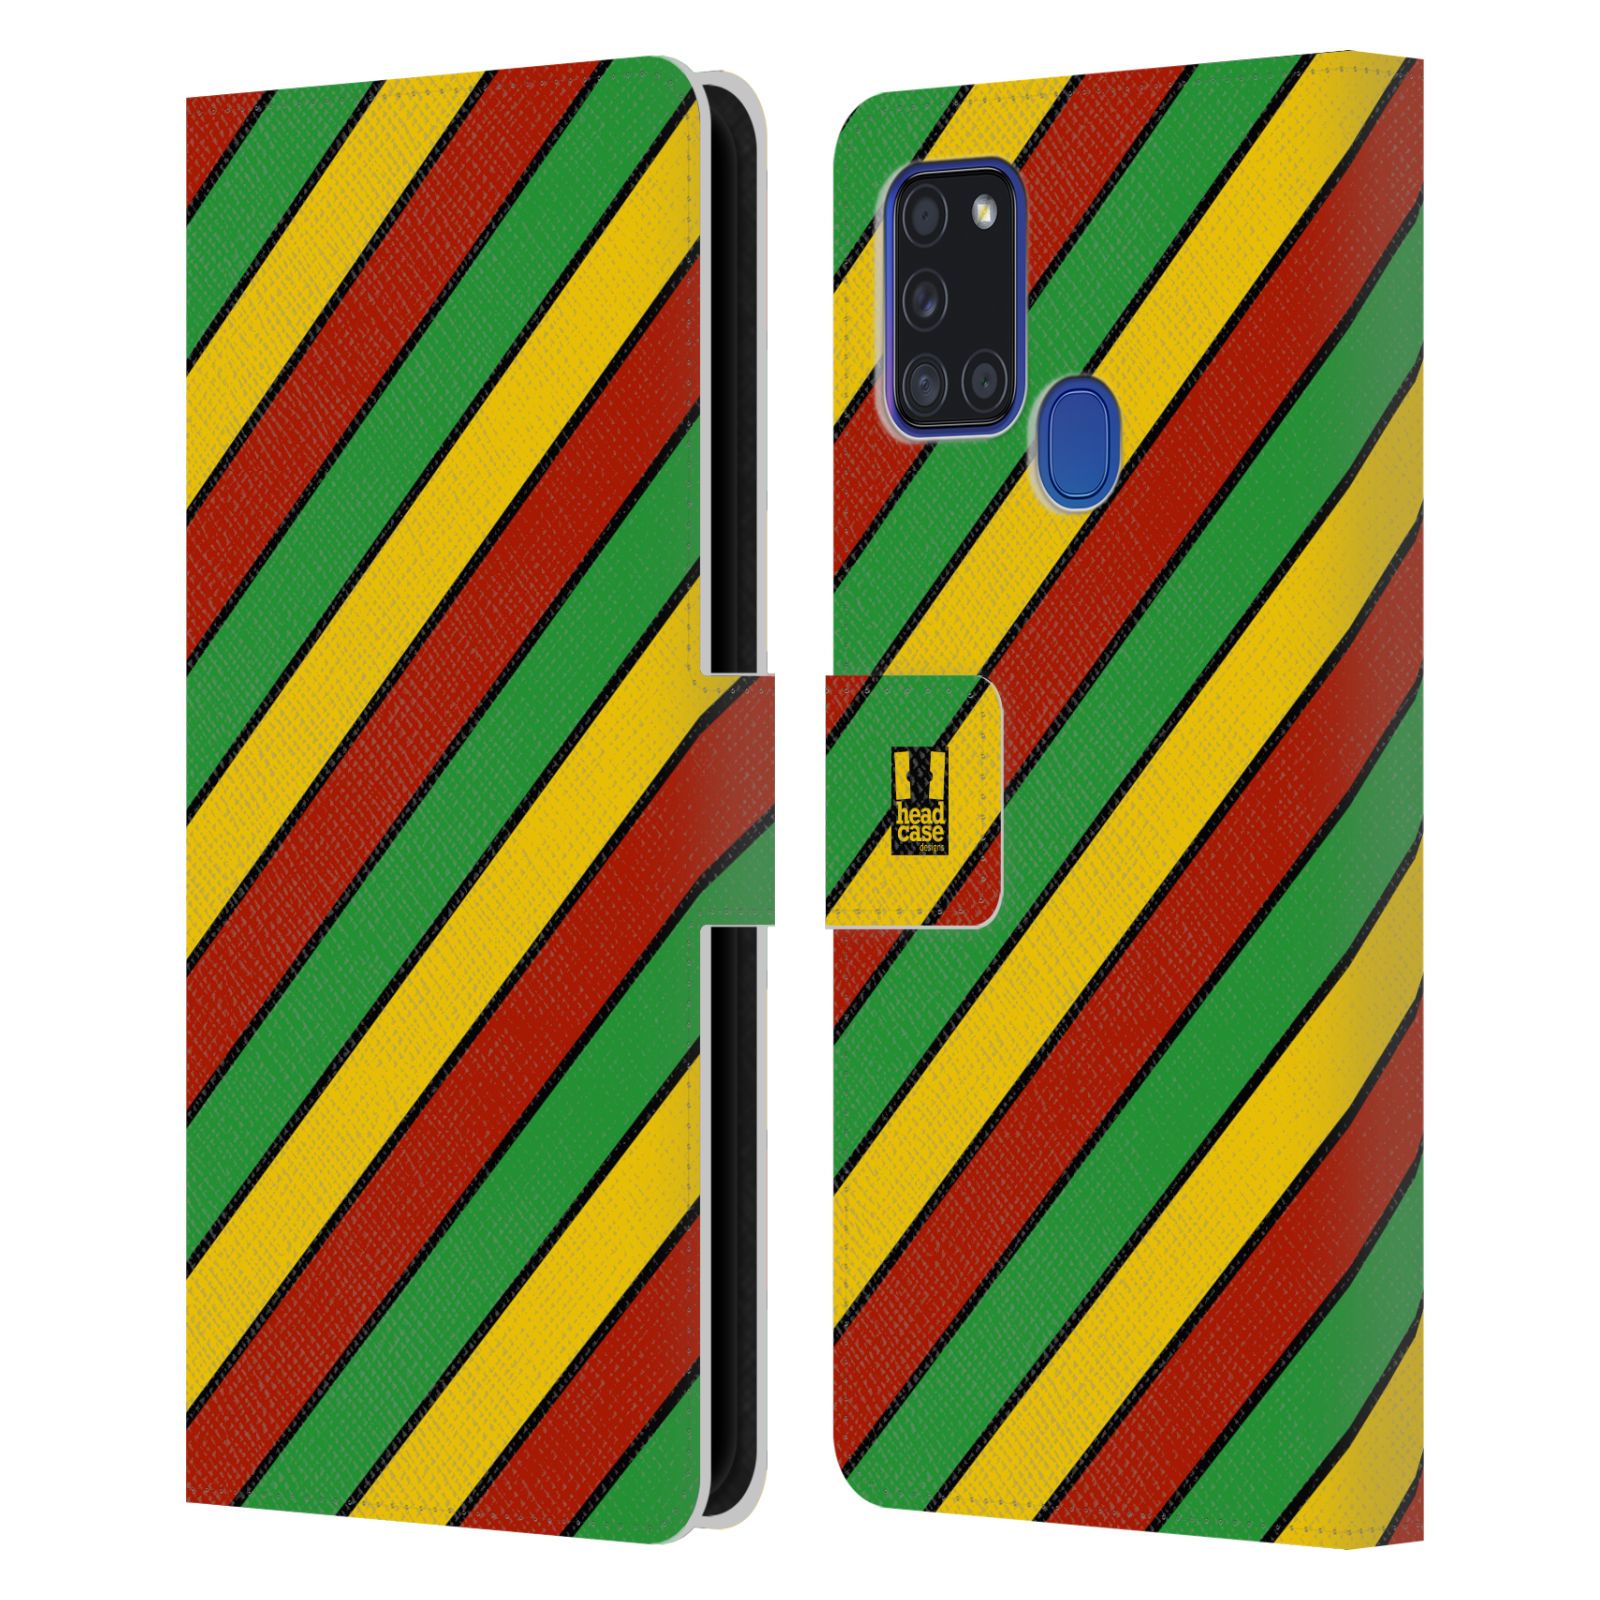 HEAD CASE Flipové pouzdro pro mobil Samsung Galaxy A21s Rastafariánský motiv Jamajka diagonální pruhy